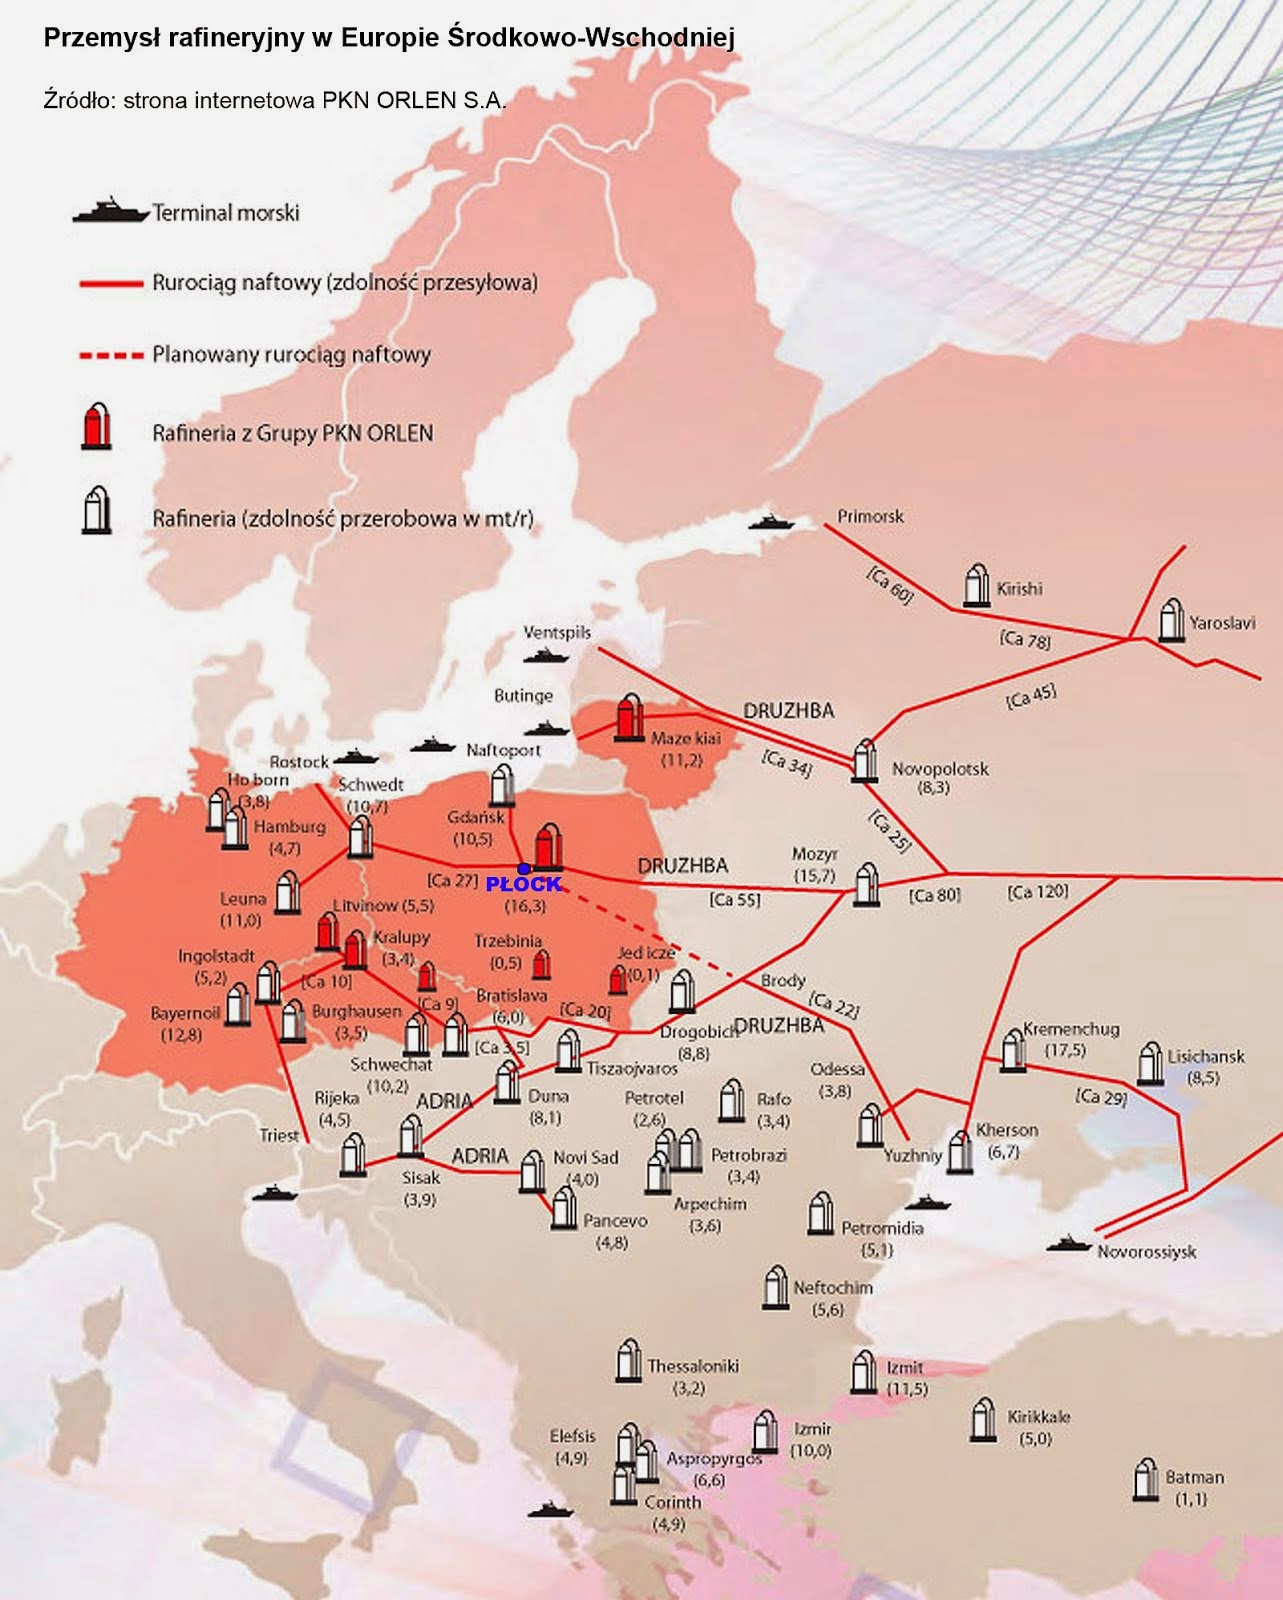 Przemysł rafineryjny w Europie Środkowo-Wschodniej